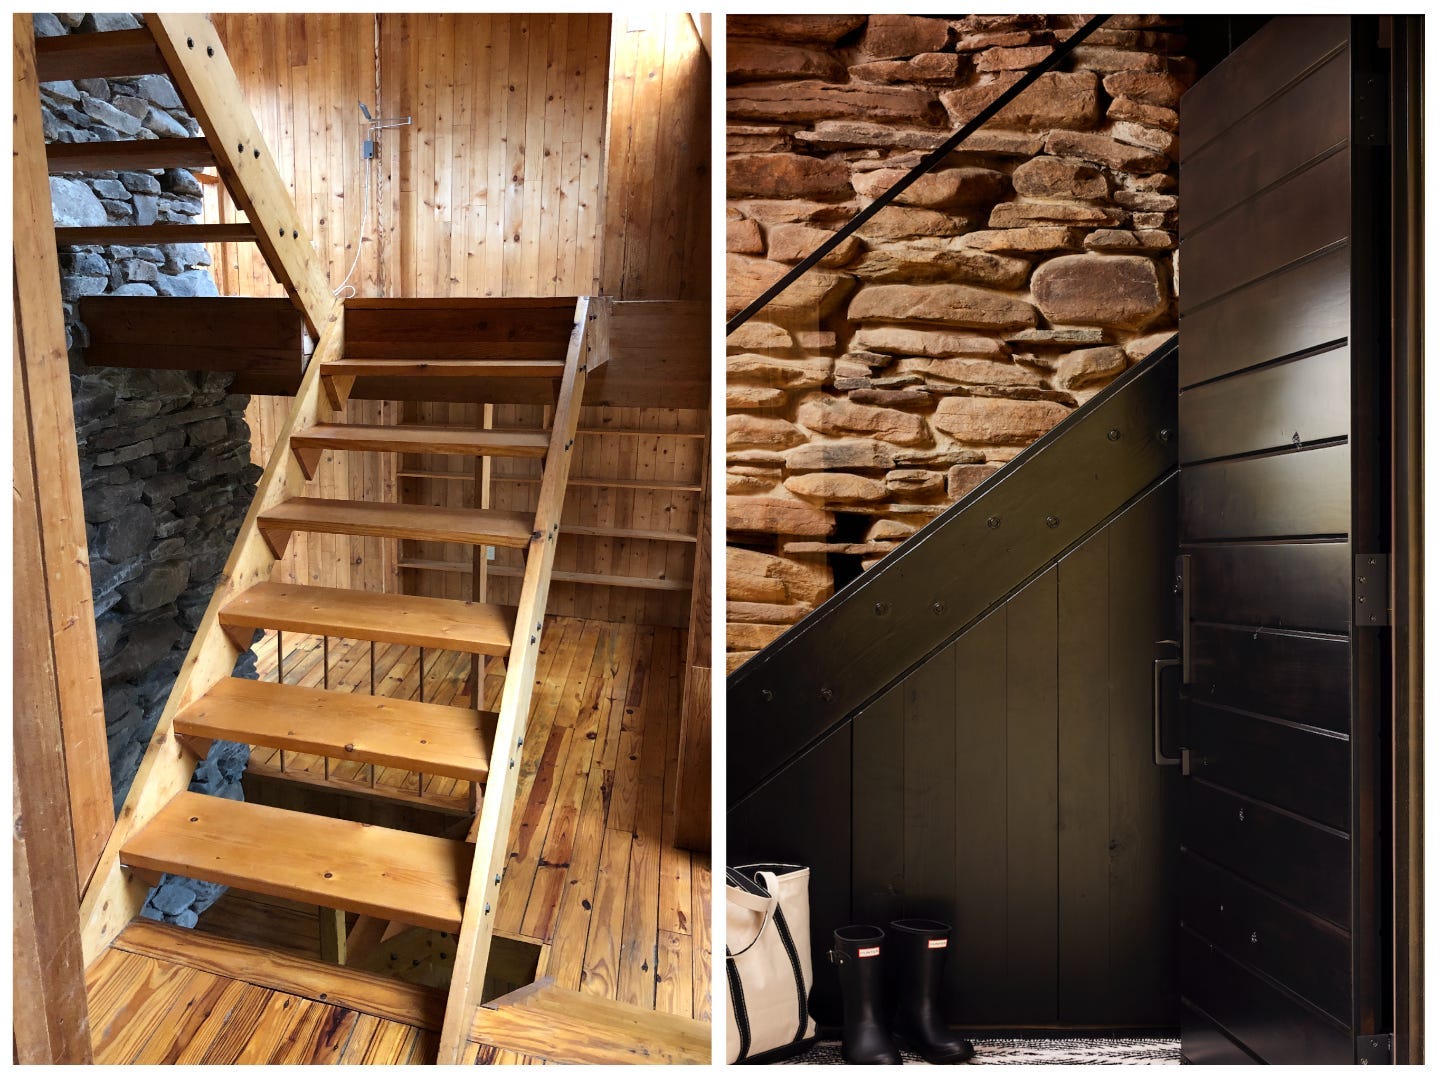 Die Treppe hatte zuvor einen offenen Raum darunter und kein Geländer.  BHDM Design fügte ein schwarzes Geländer hinzu und schloss den offenen Raum ab, um Stauraum hinzuzufügen.